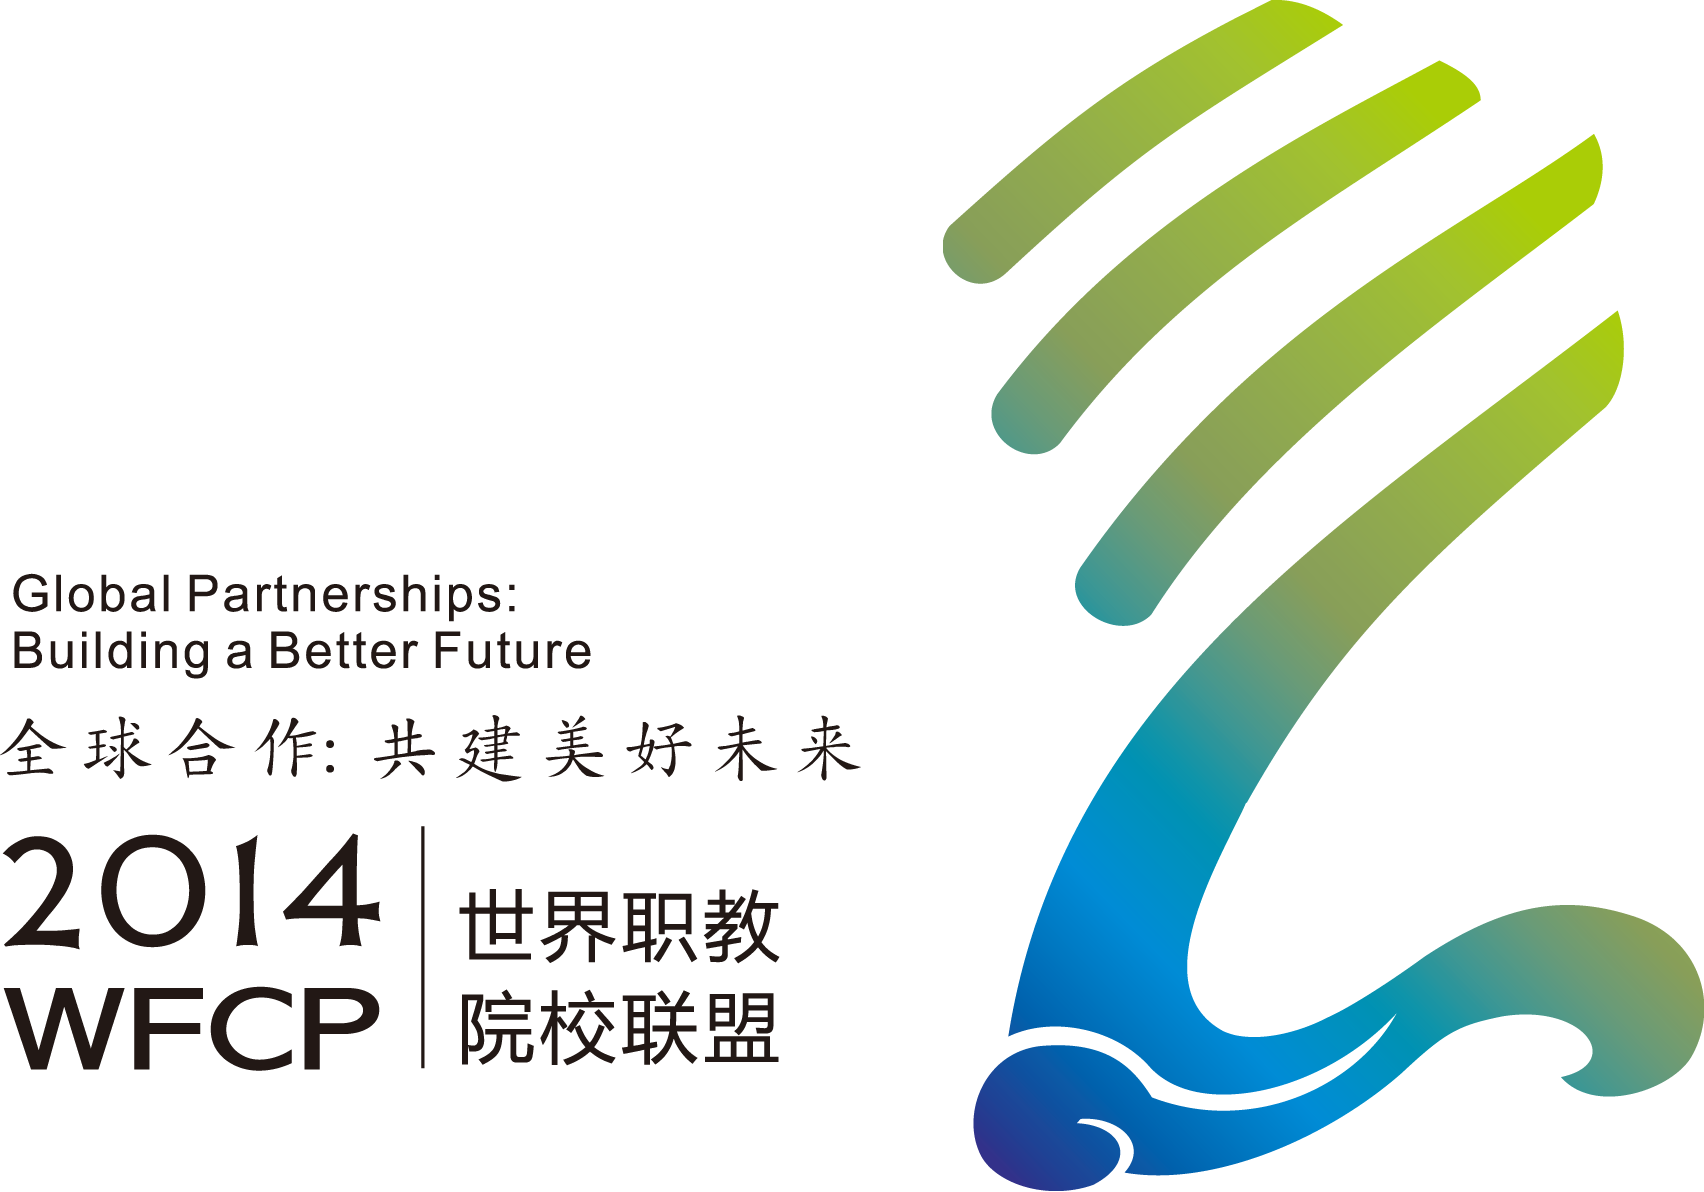 wfcp-world-congress-2014-logo